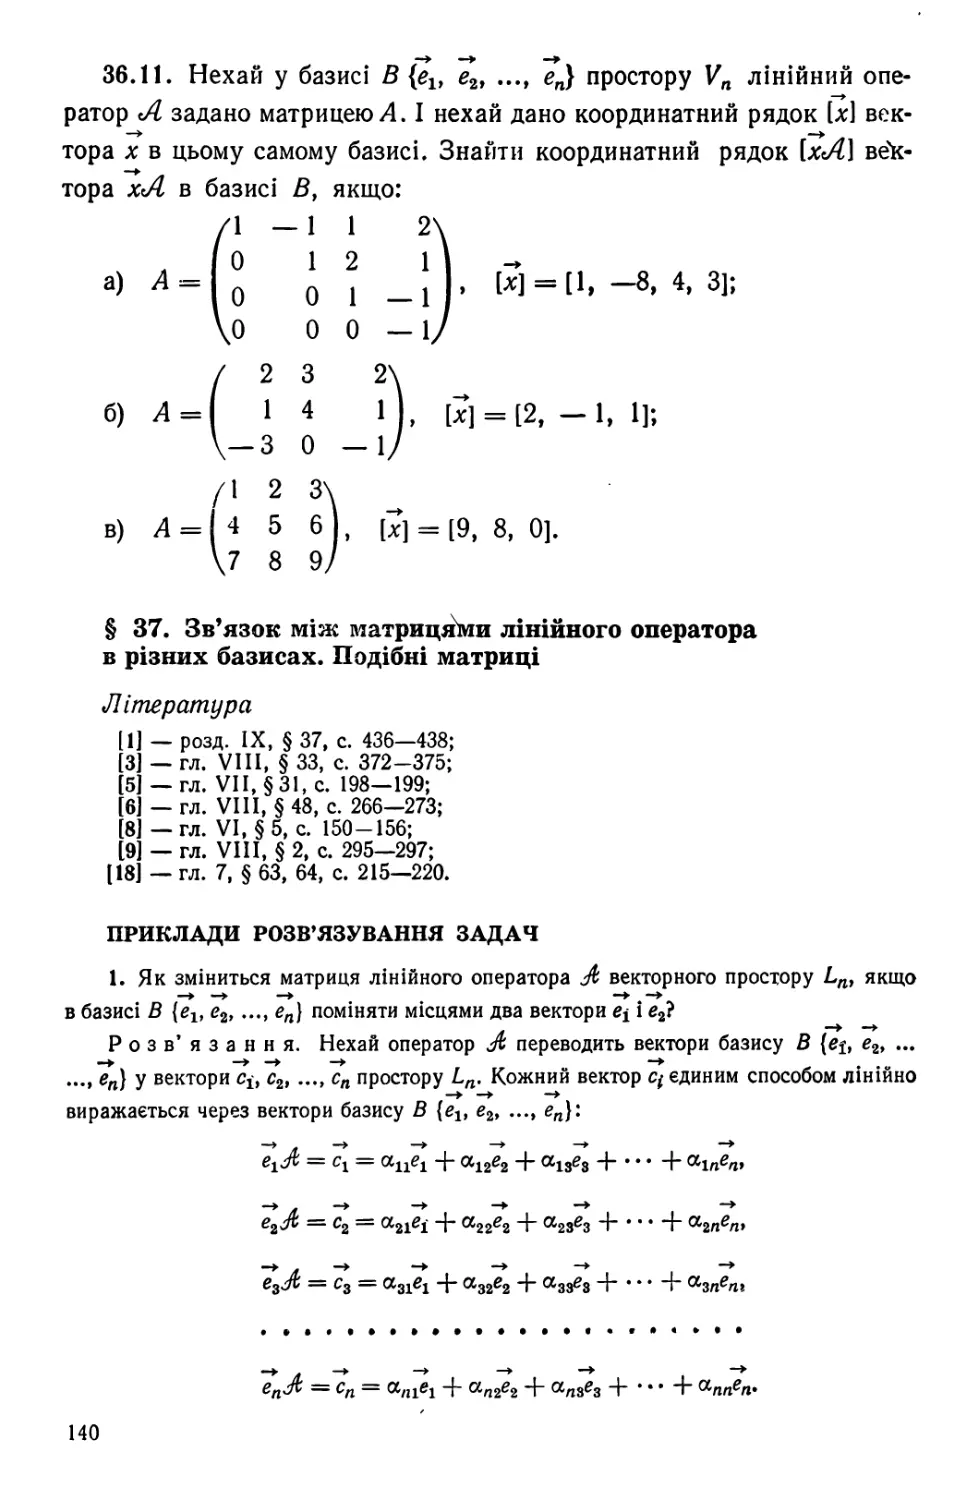 § 37. Зв'язок між матрицями лінійного оператора в різних базисах. Подібні матриці